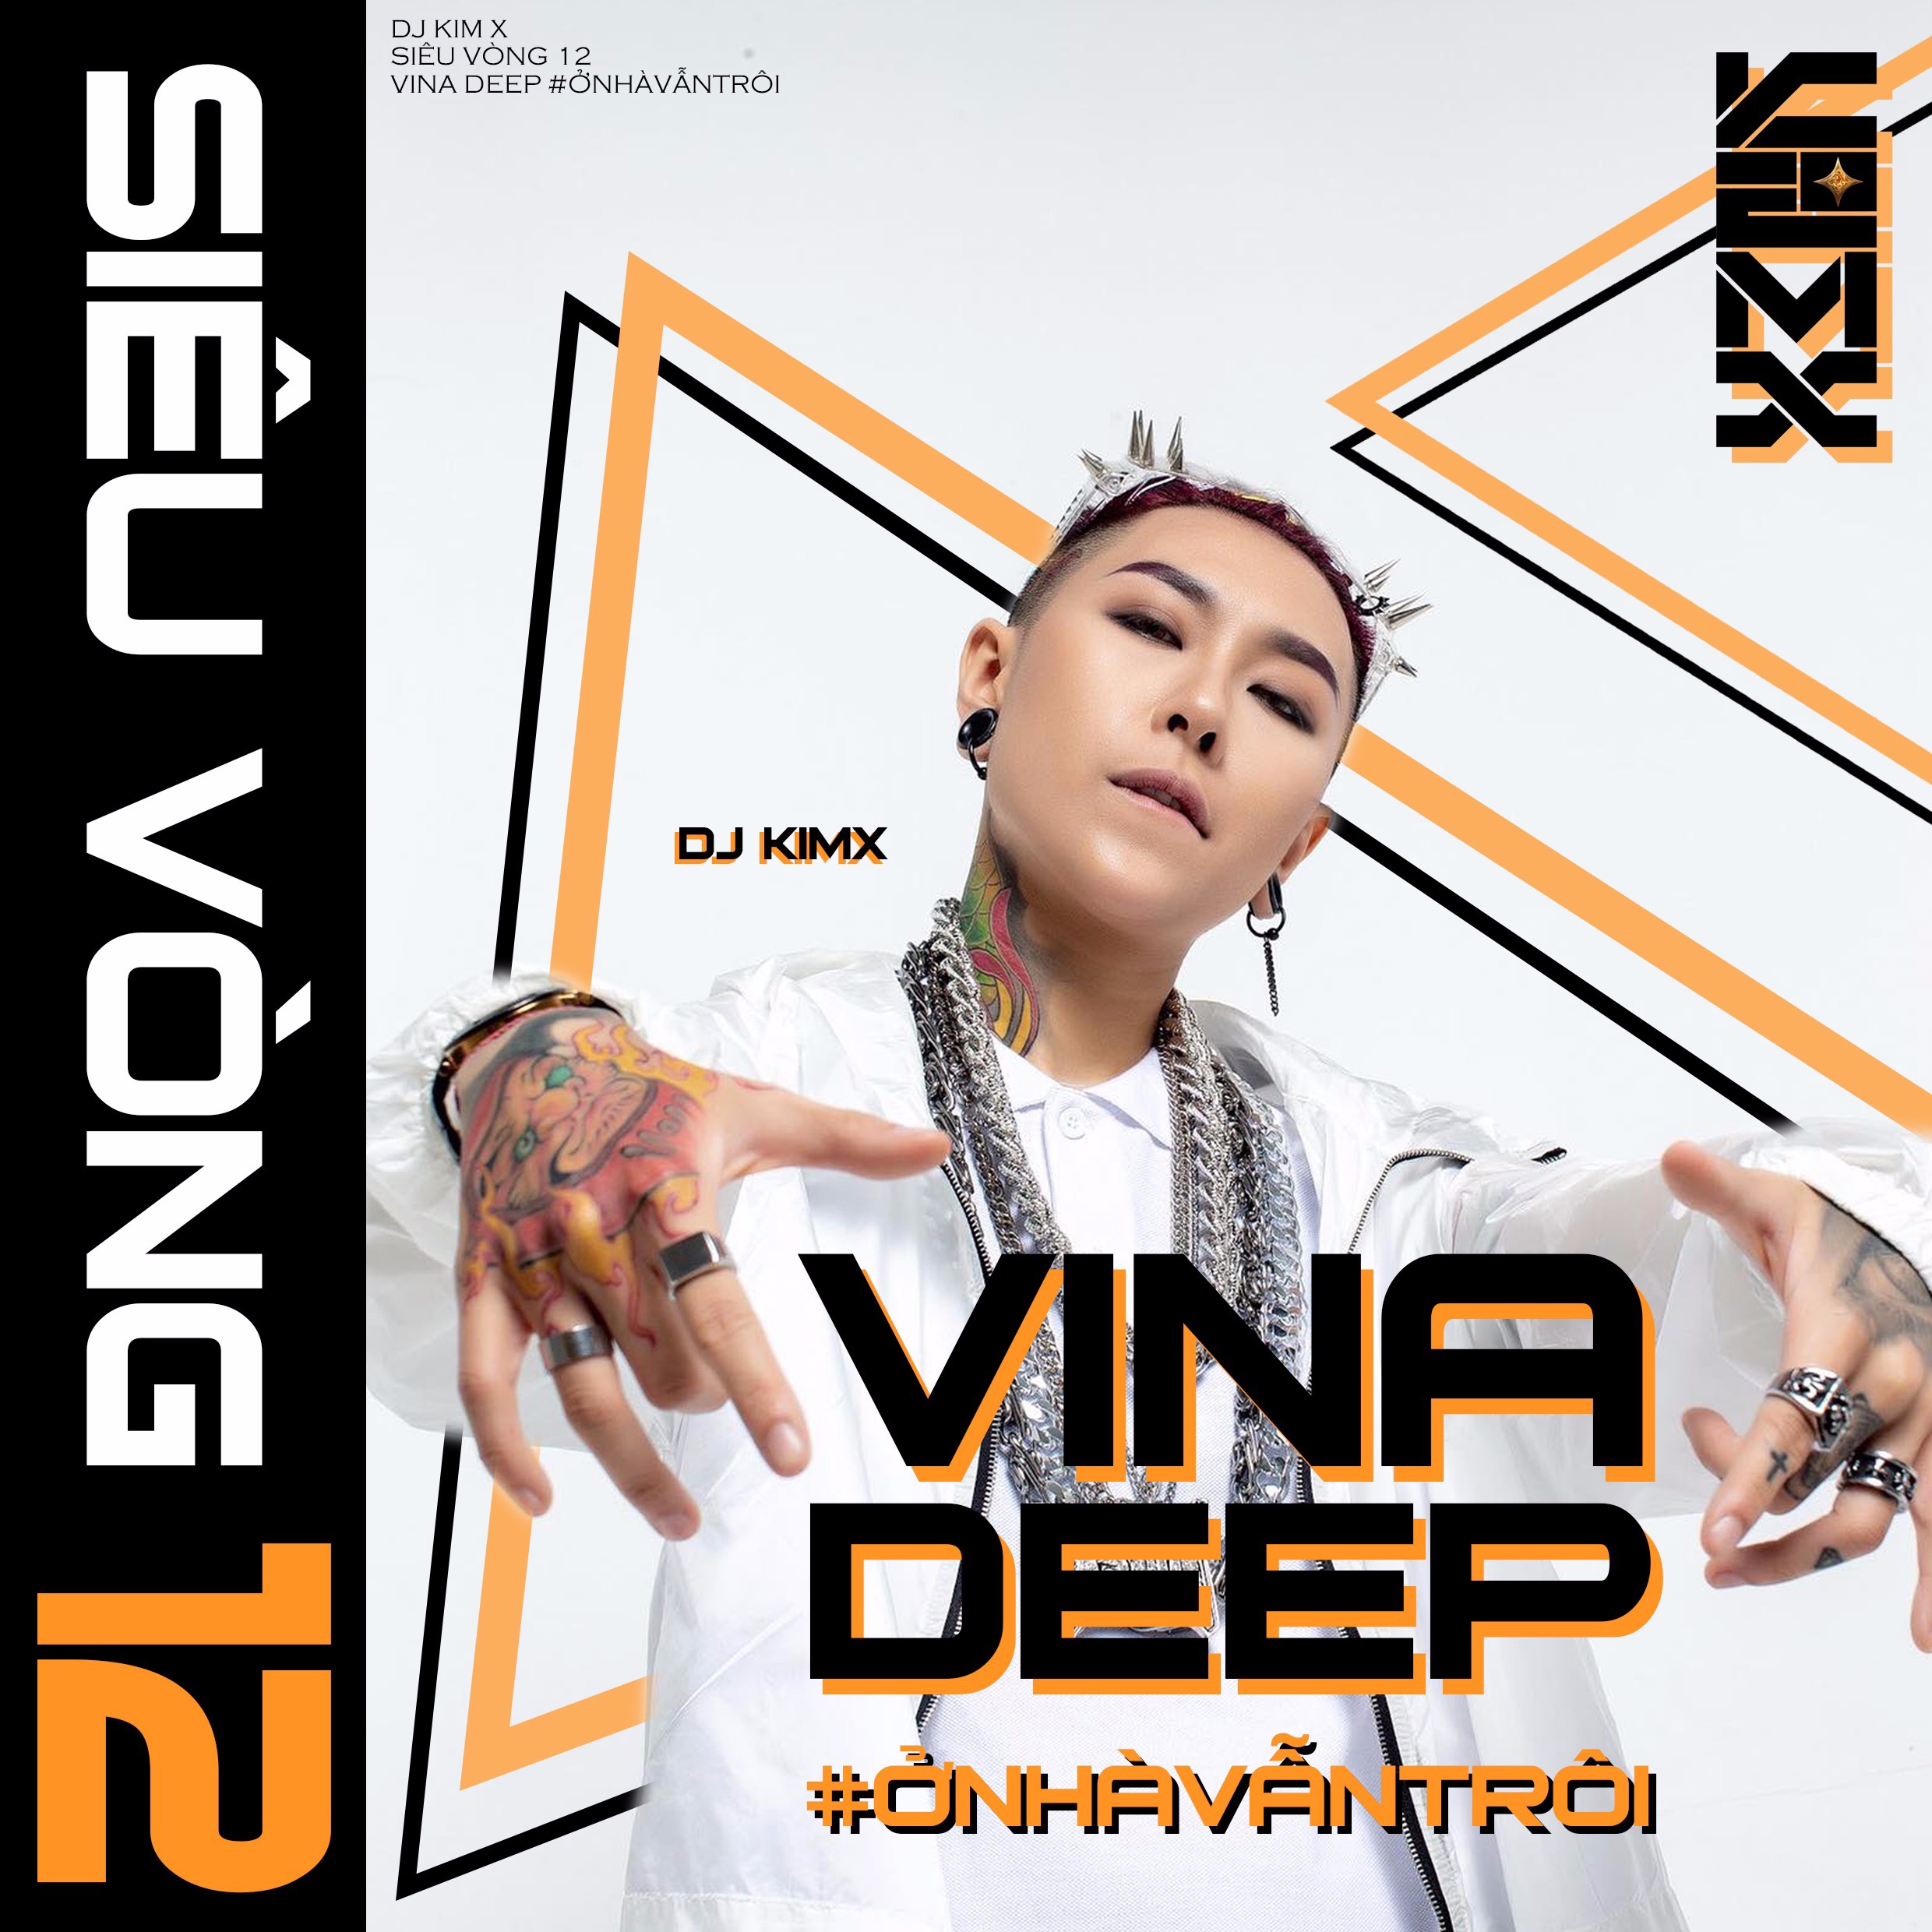 ดาวน์โหลด #ỞNHÀVẪNTRÔI --- DJ KIMX --- MIXSET KIMX SIÊU VÒNG 12 --- VINADEEP